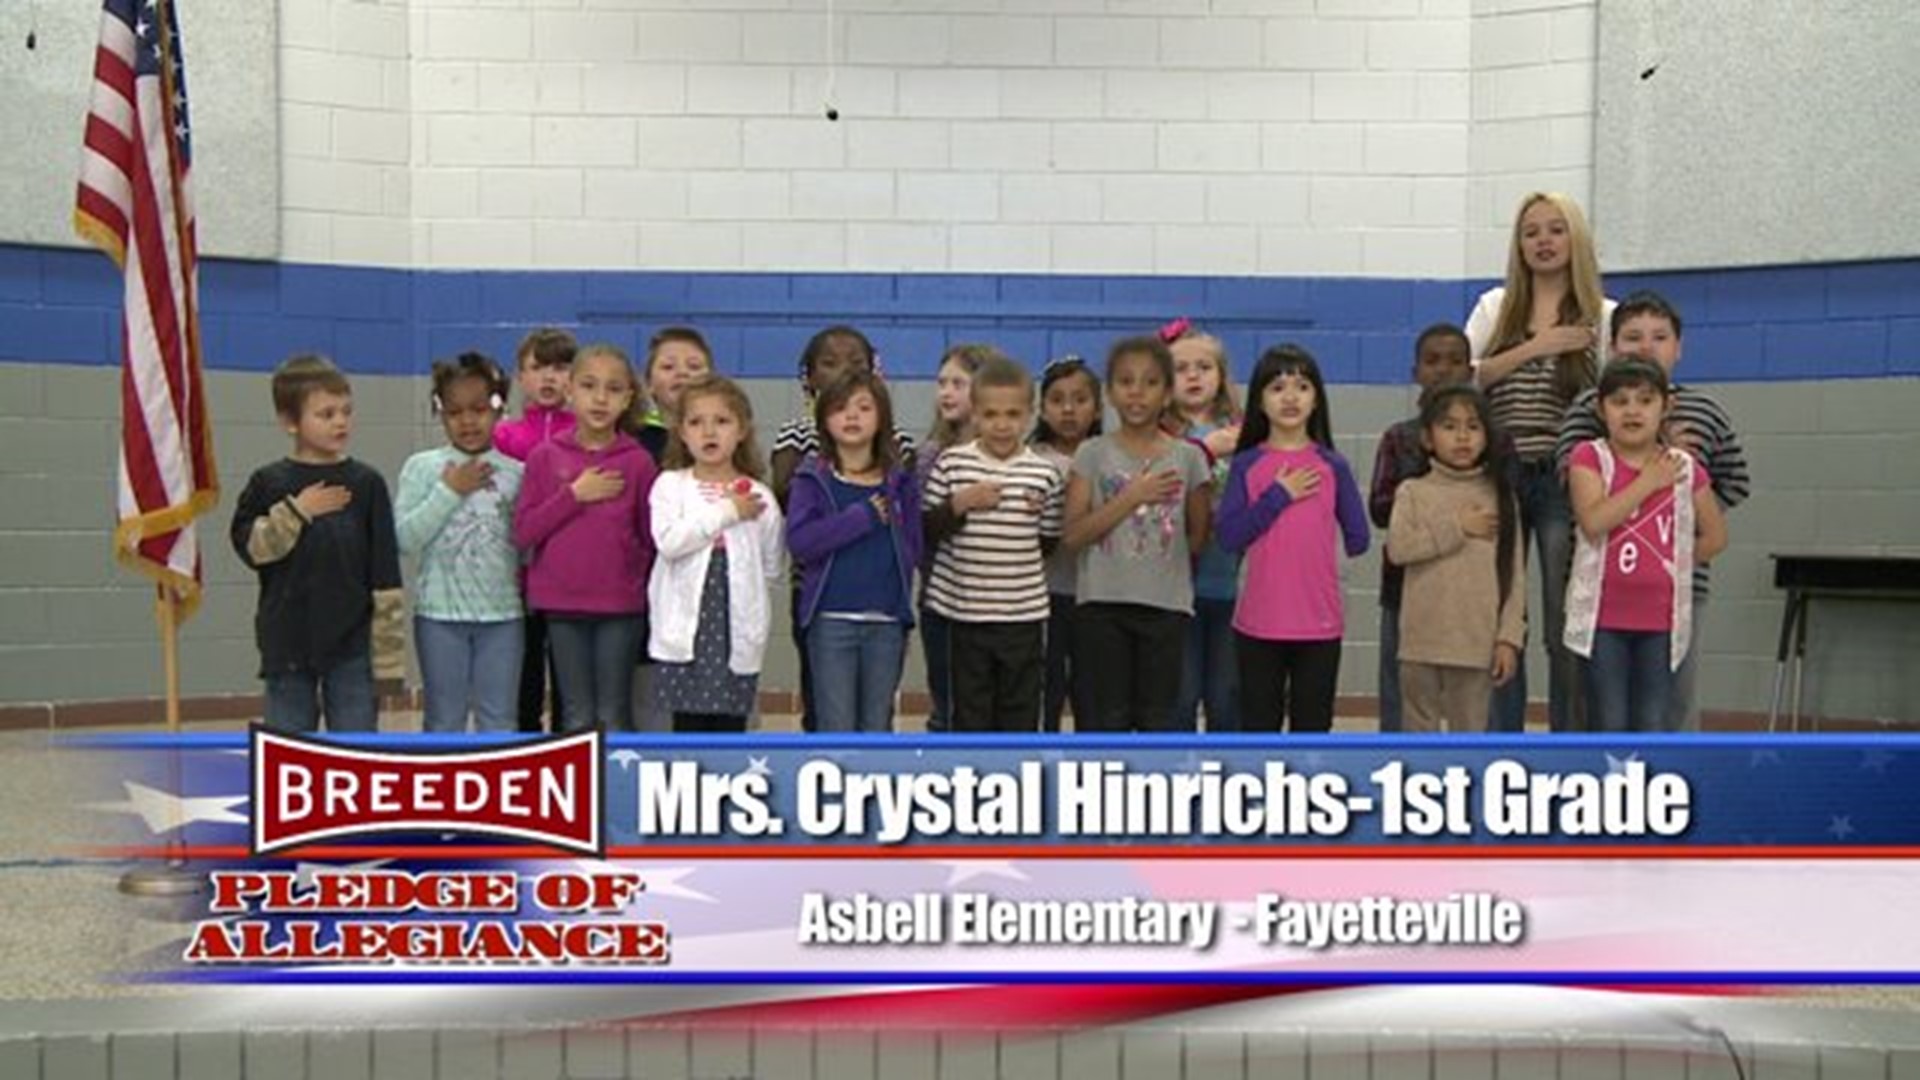 Asbell Elementary, Fayetteville - Mrs. Crystal Hinrichs - 1st Grade